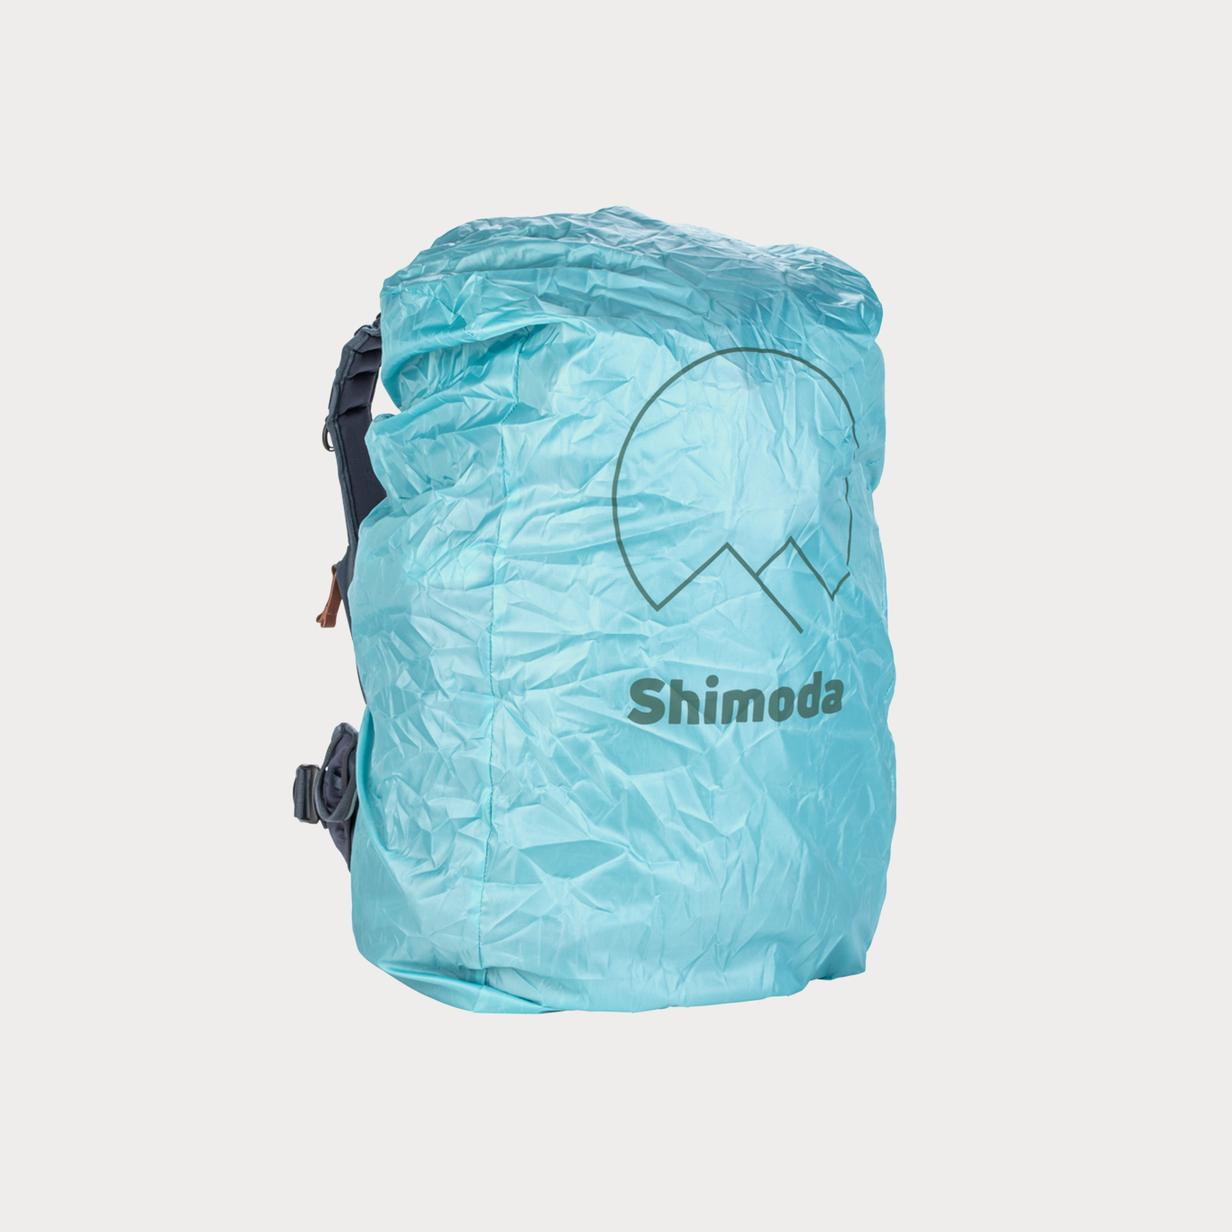 Moment Shimoda 520 197 Rain Cover for 30 40 L Backpacks 01